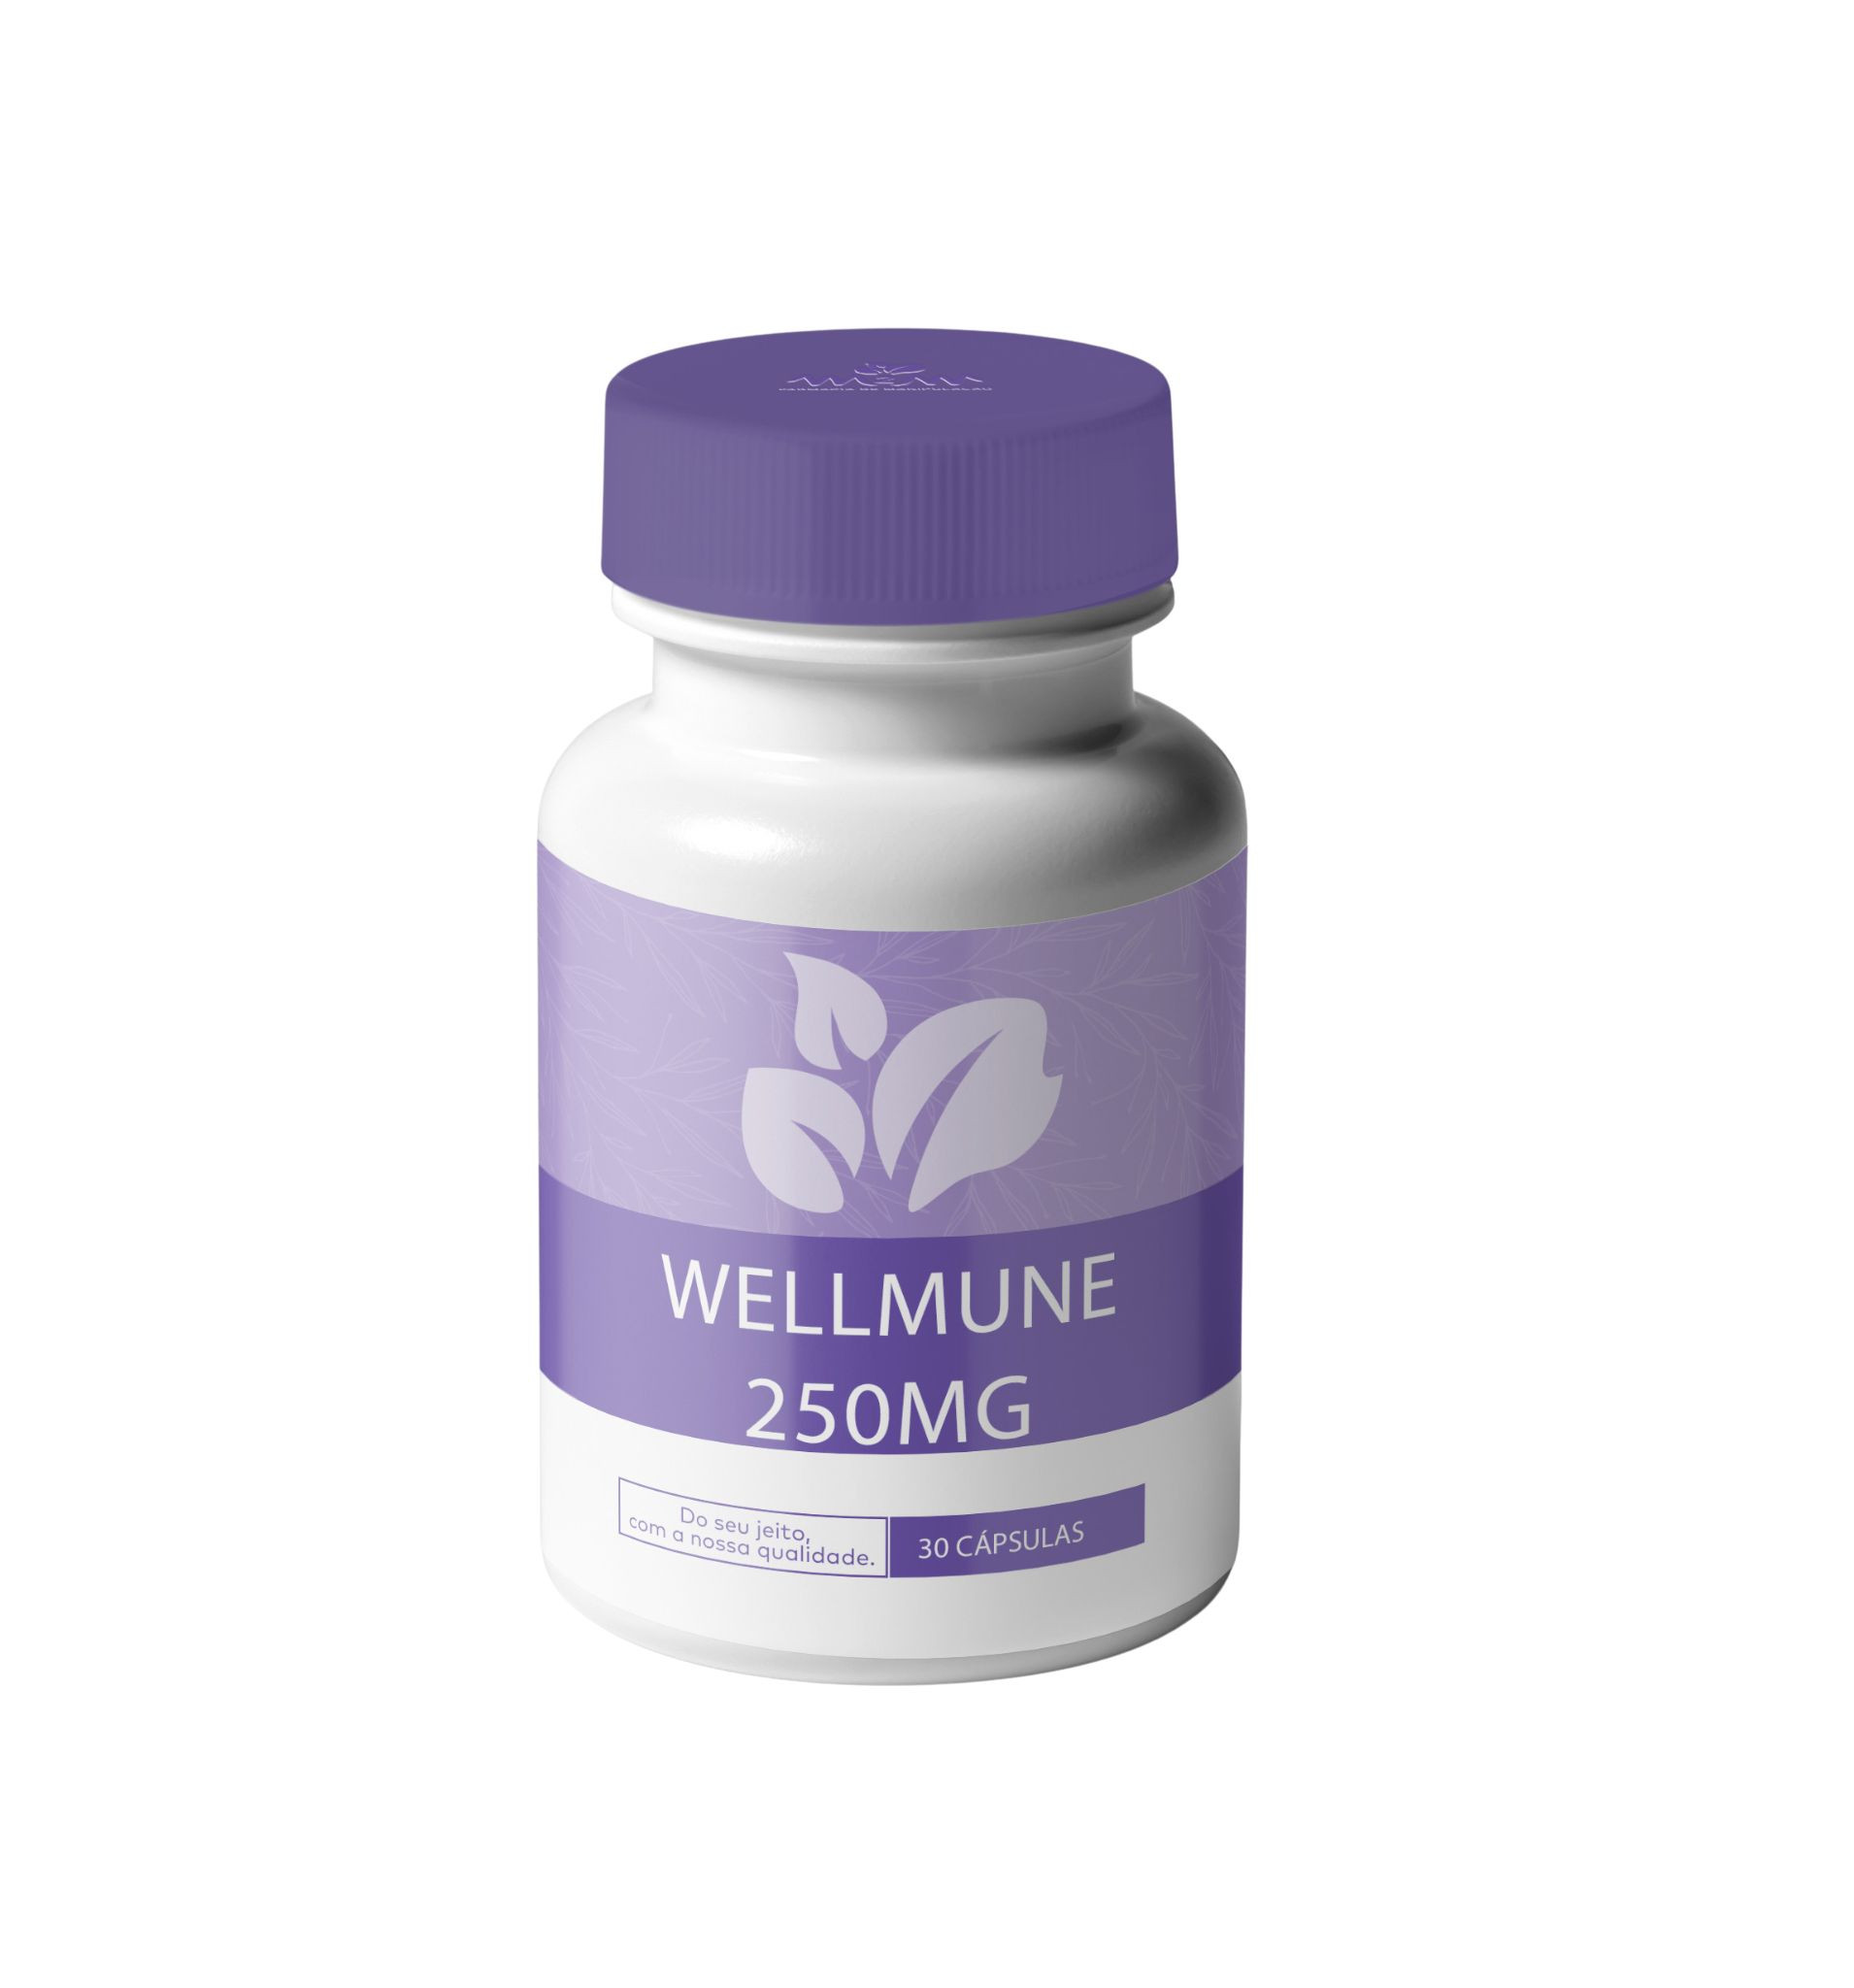 wellmune-250mg-capsulas-para-imunidade